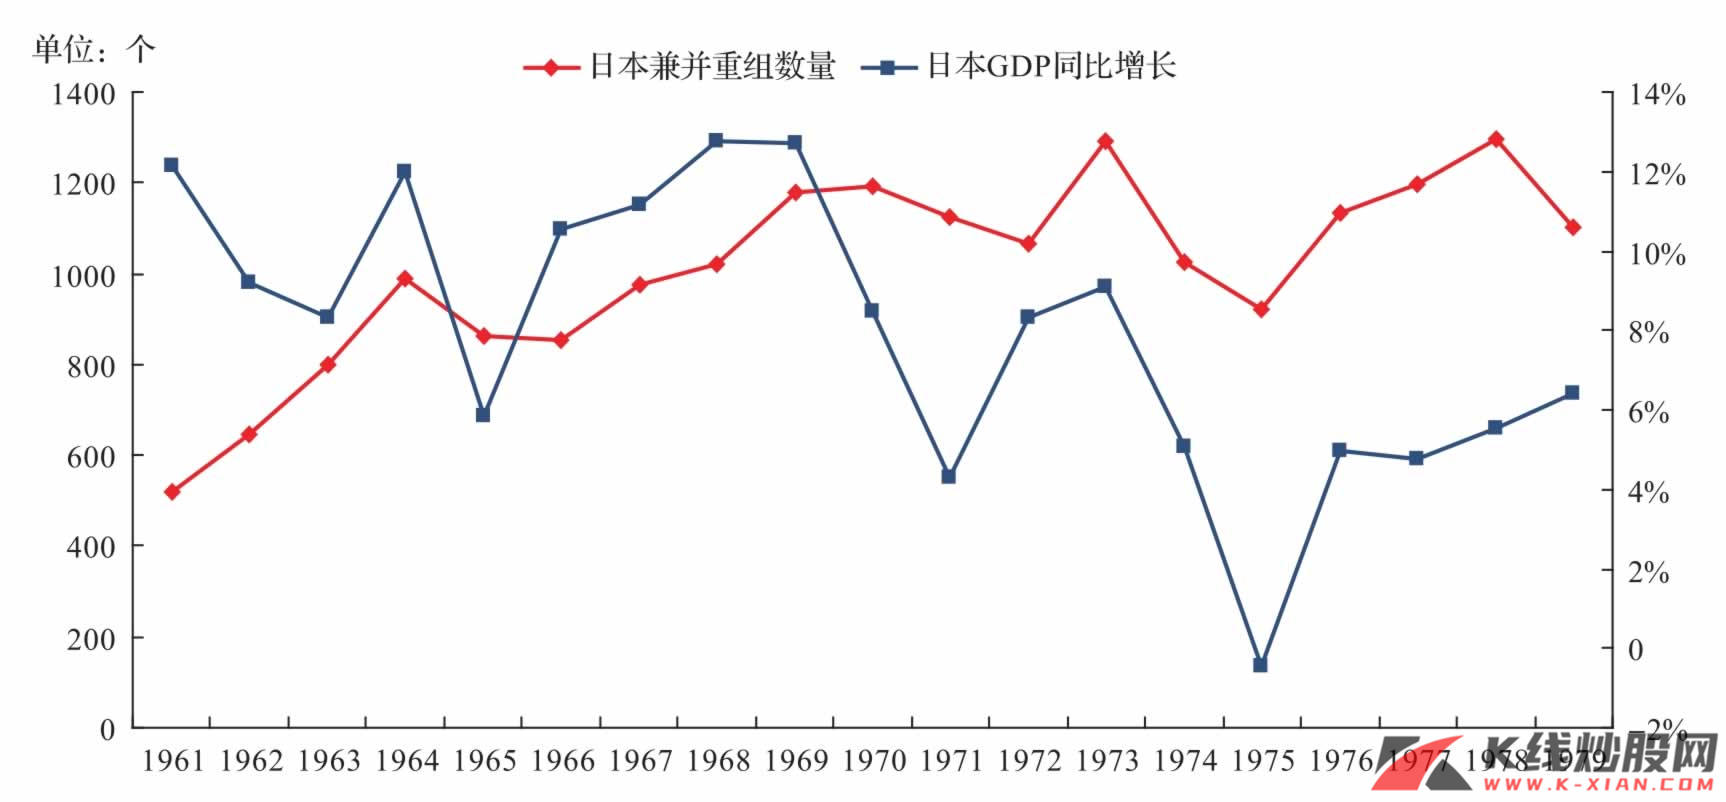 日本并购重组数目与GDP同比增长